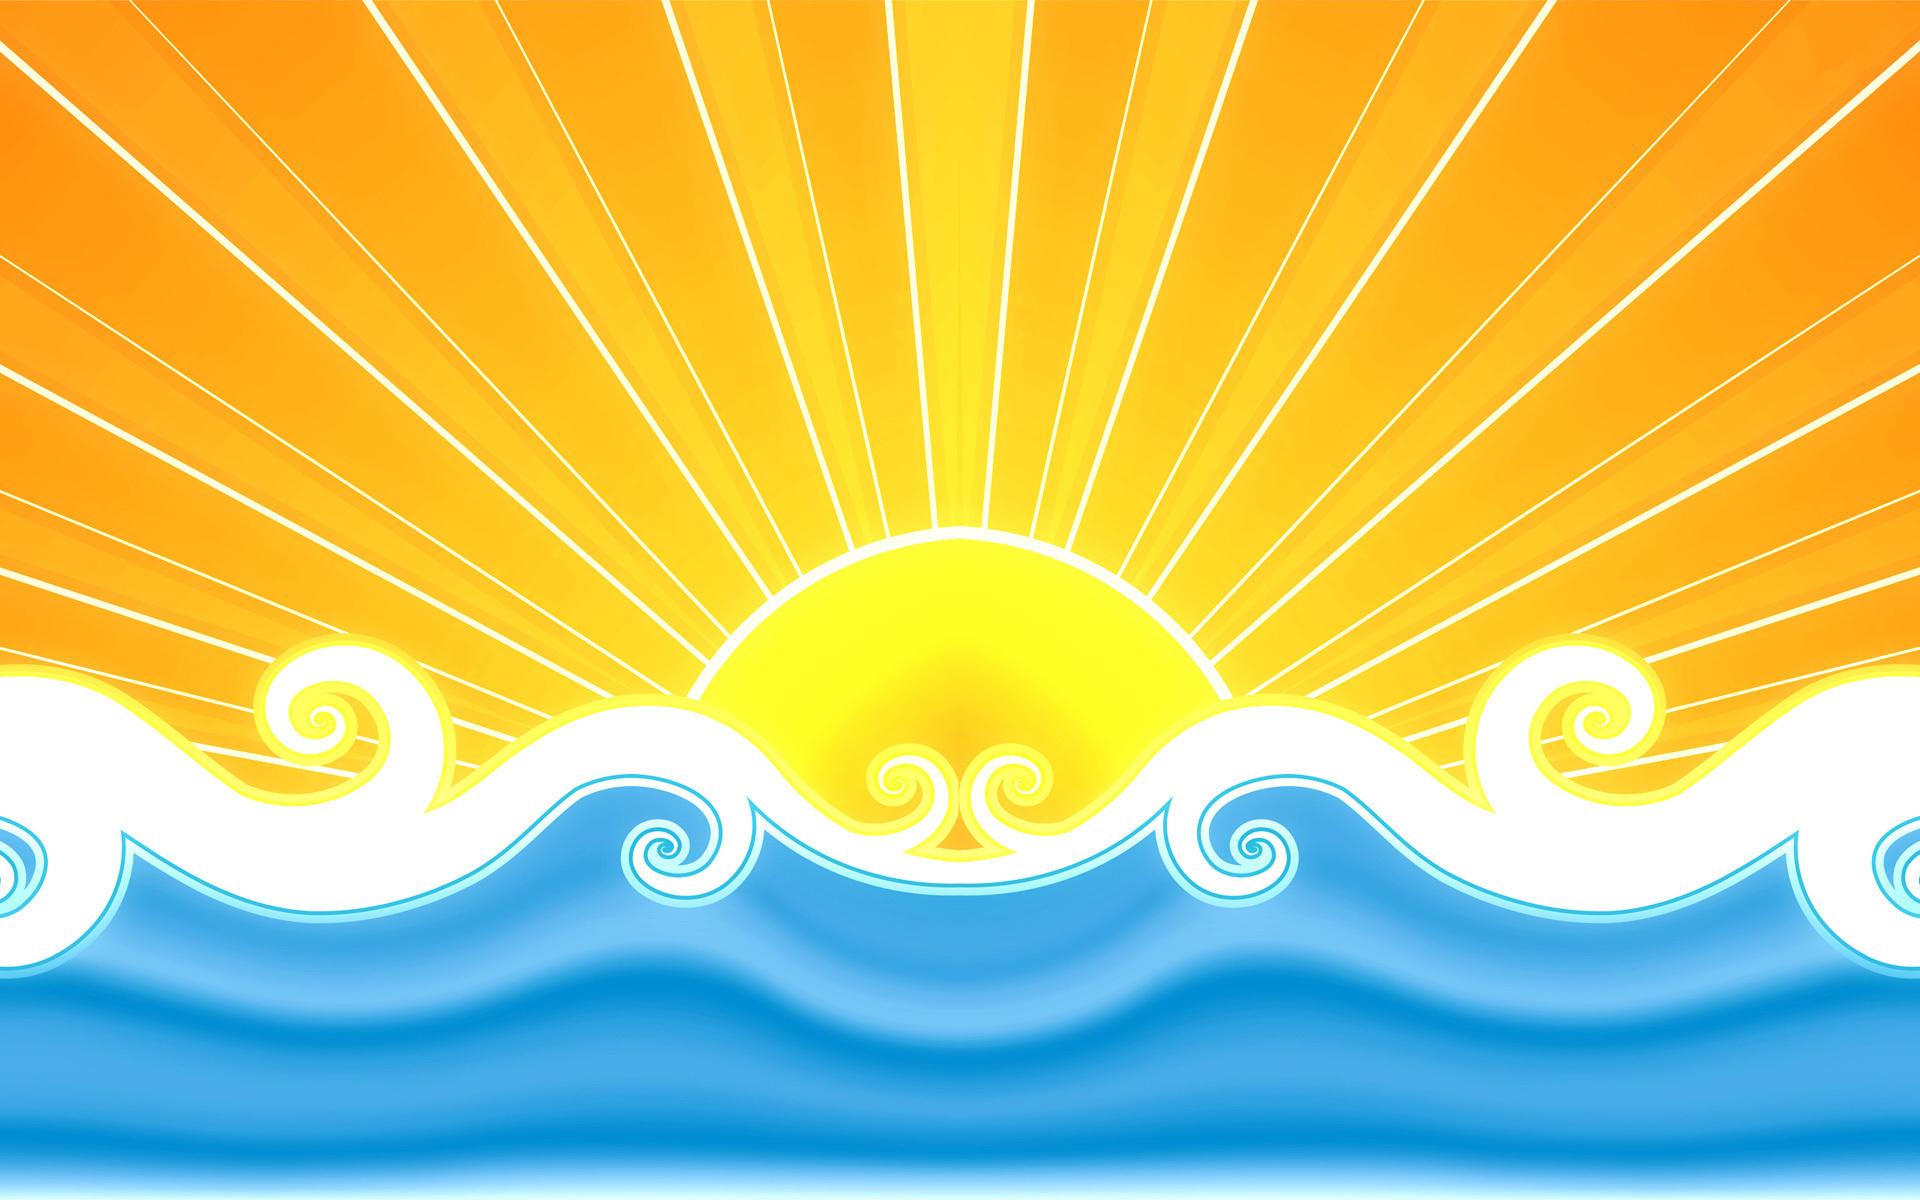 Cool Summer Sun Desktop Wallpaper 4k